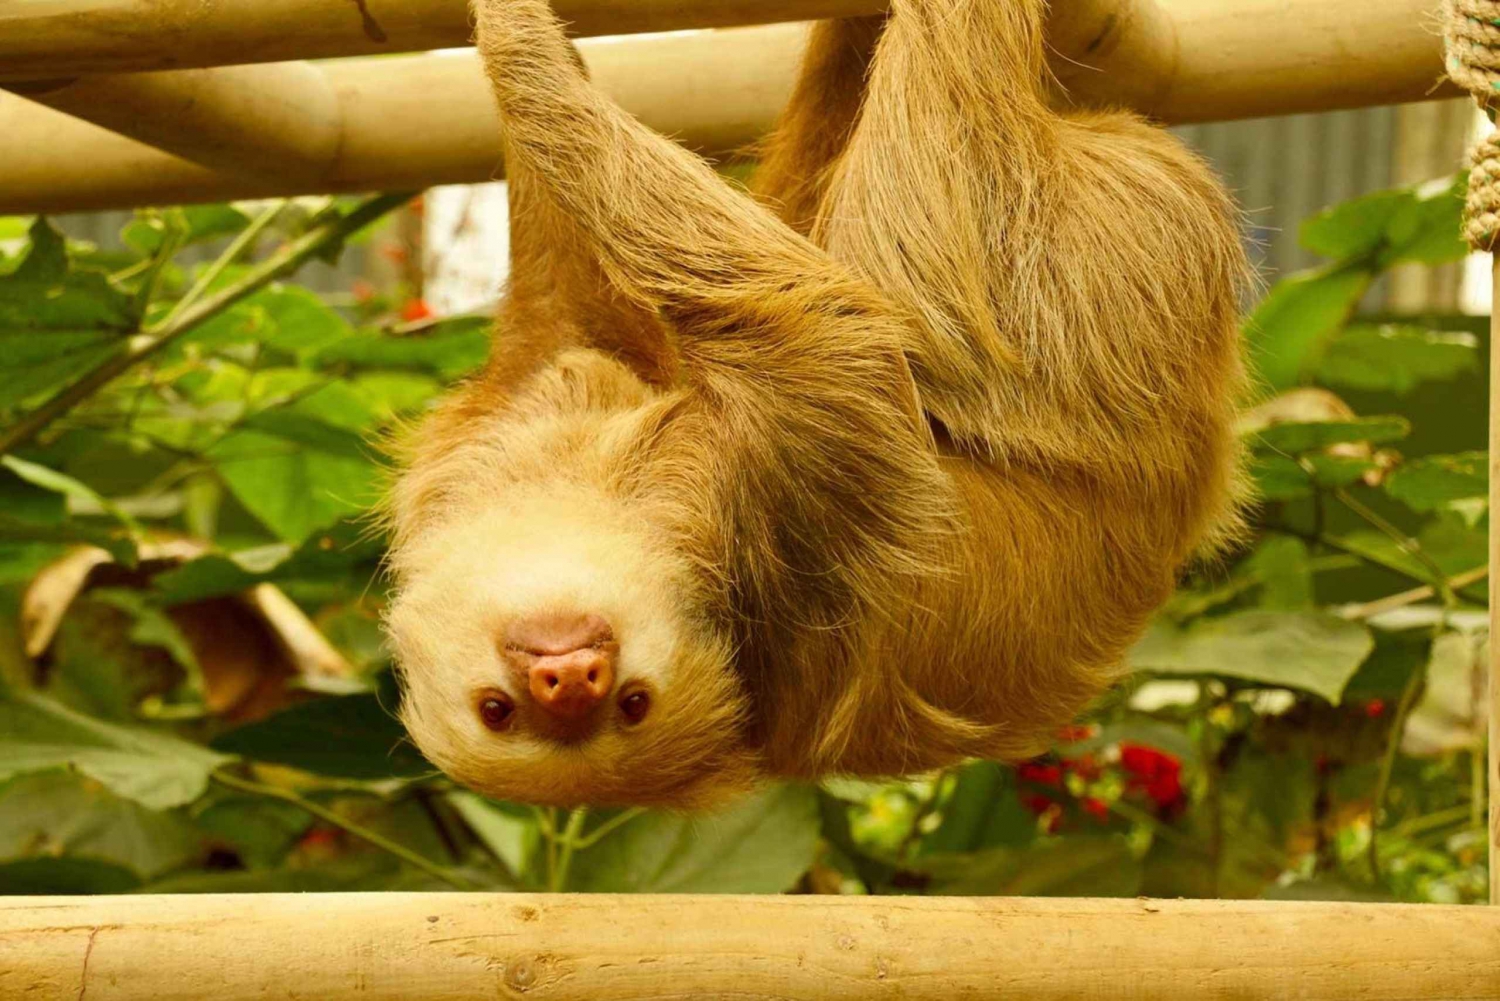 Sloth Sanctuary Monteverdessä